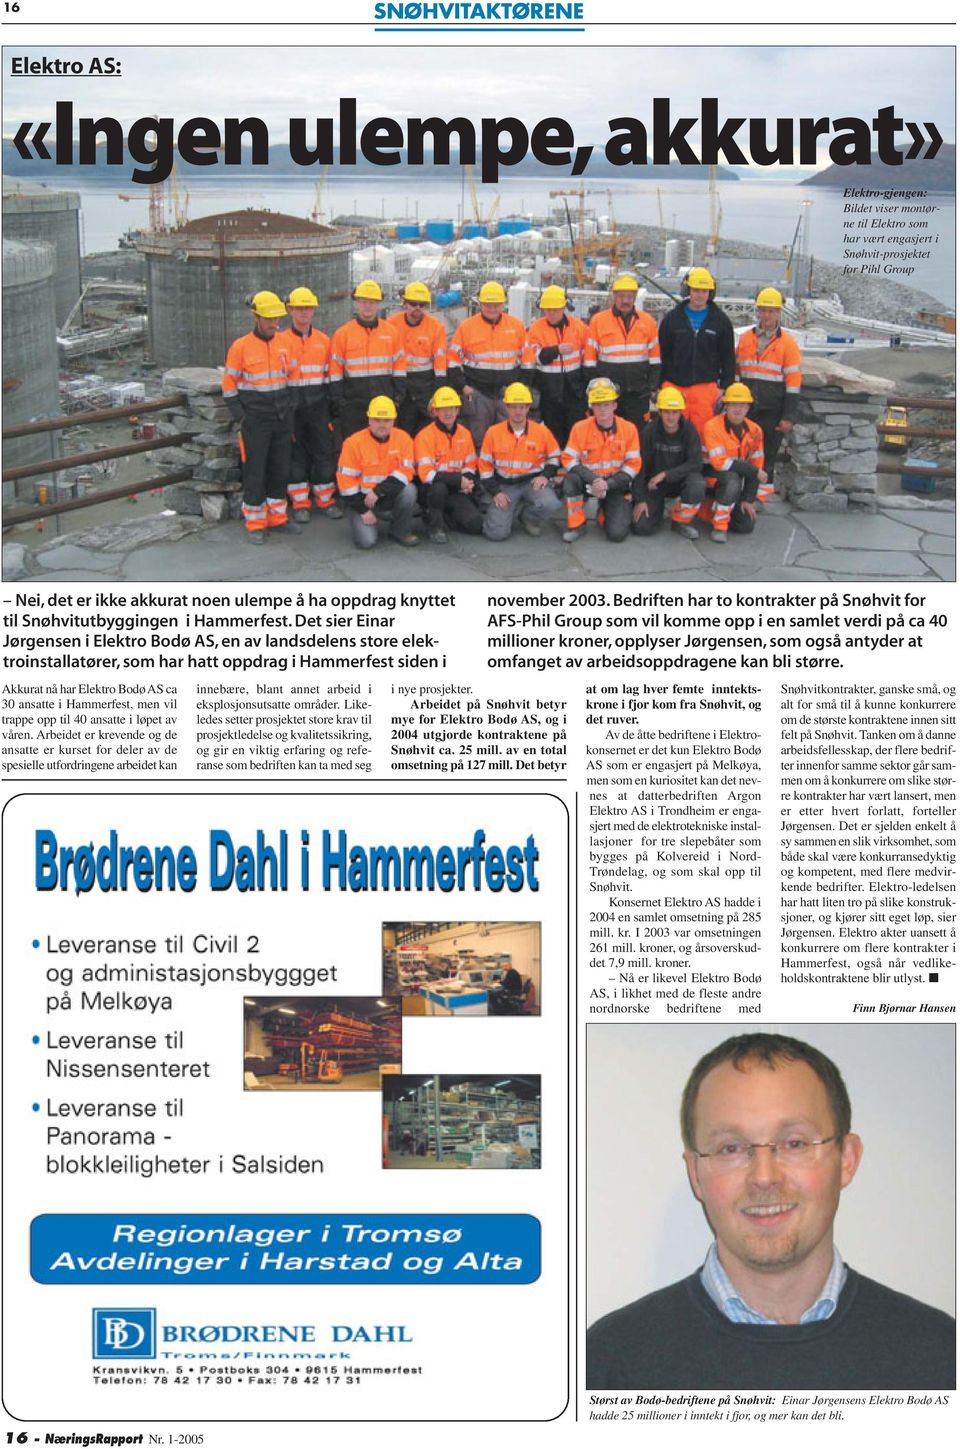 Det sier Einar Jørgensen i Elektro Bodø AS, en av landsdelens store elektroinstallatører, som har hatt oppdrag i Hammerfest siden i Akkurat nå har Elektro Bodø AS ca 30 ansatte i Hammerfest, men vil